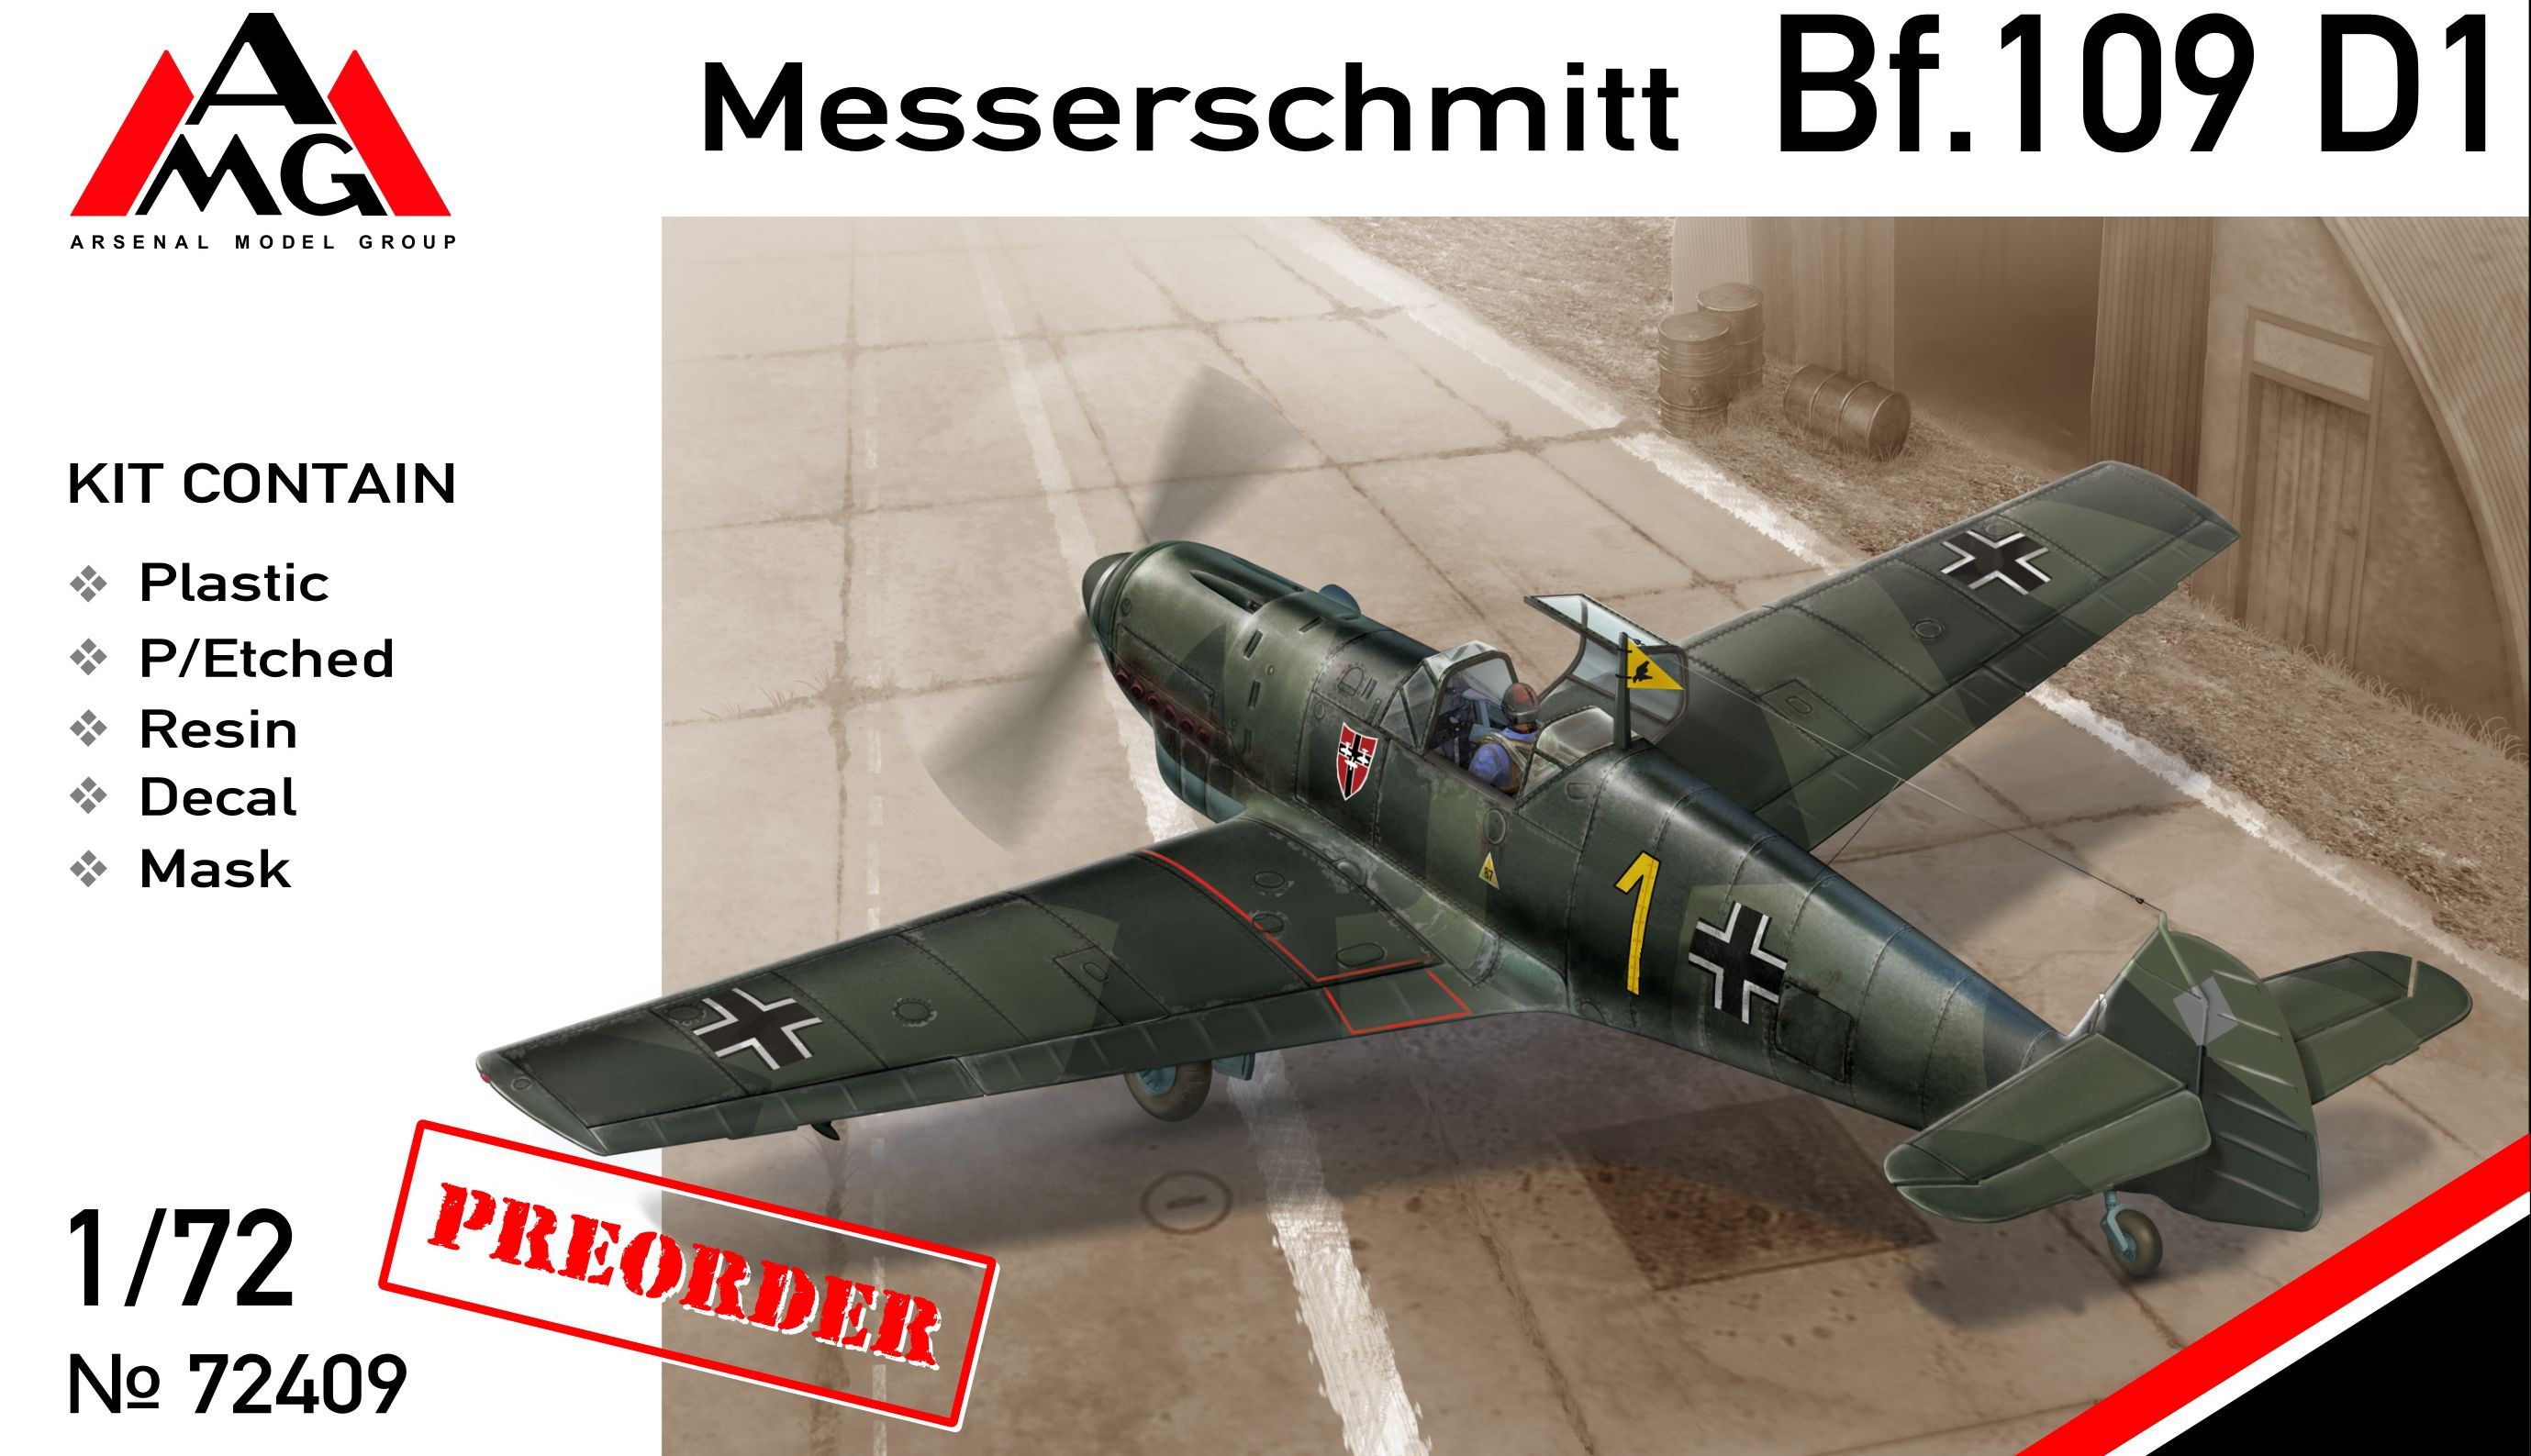 Messerschmitt Bf.109 C1-1:72   *** NEW *** AMG Models 72405 